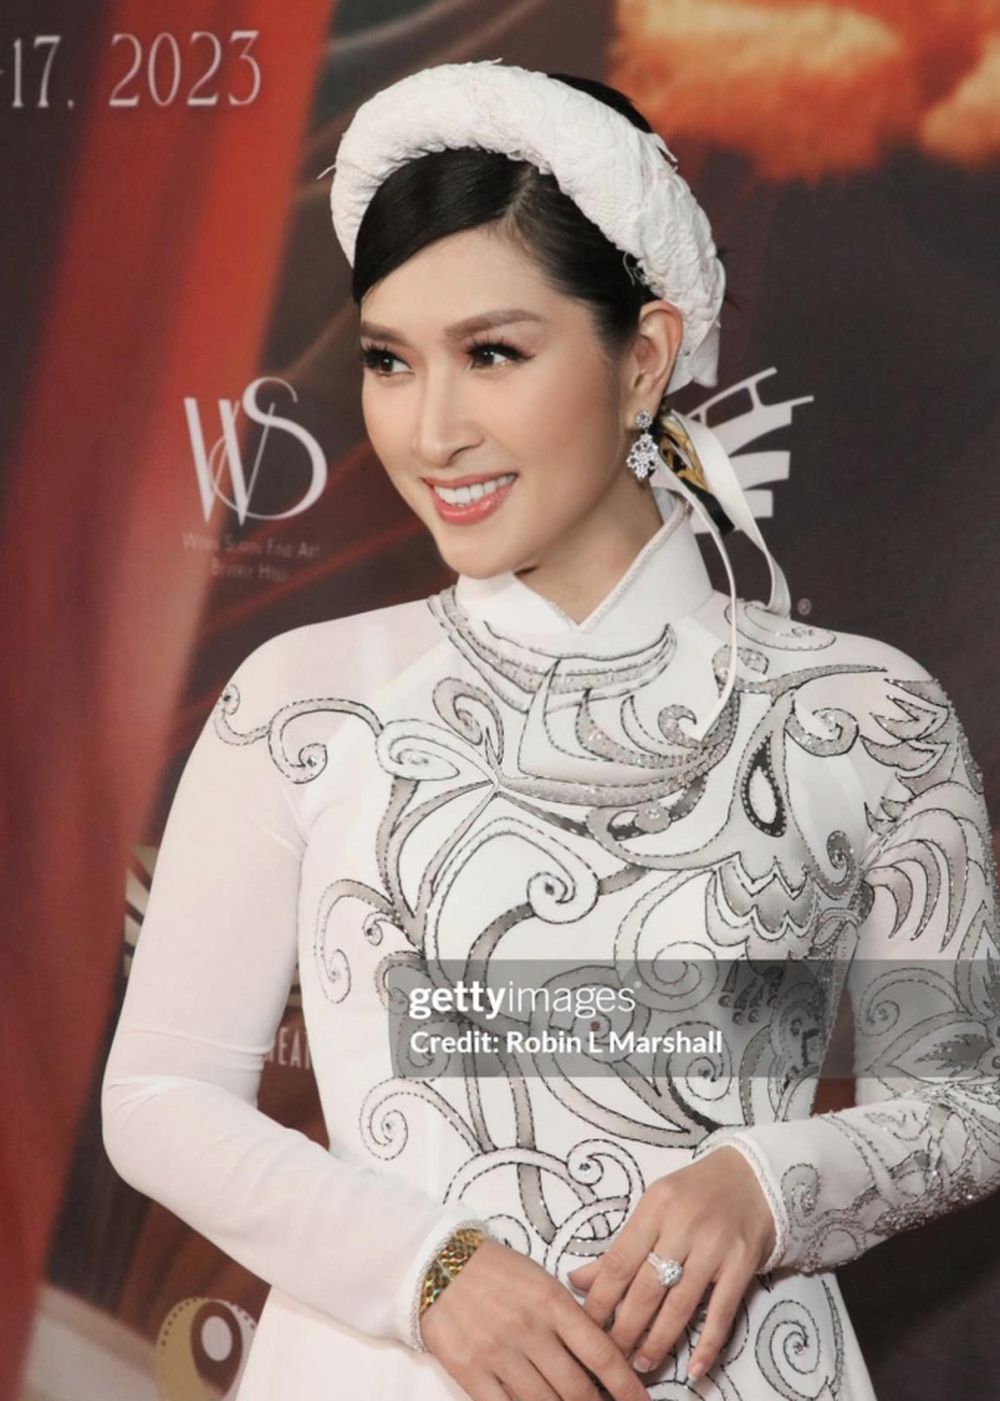 Ca sĩ Nguyễn Hồng Nhung diện áo dài, hát Xin chào Việt Nam tại Liên hoan phim thế giới châu Á 2023 - Ảnh 1.